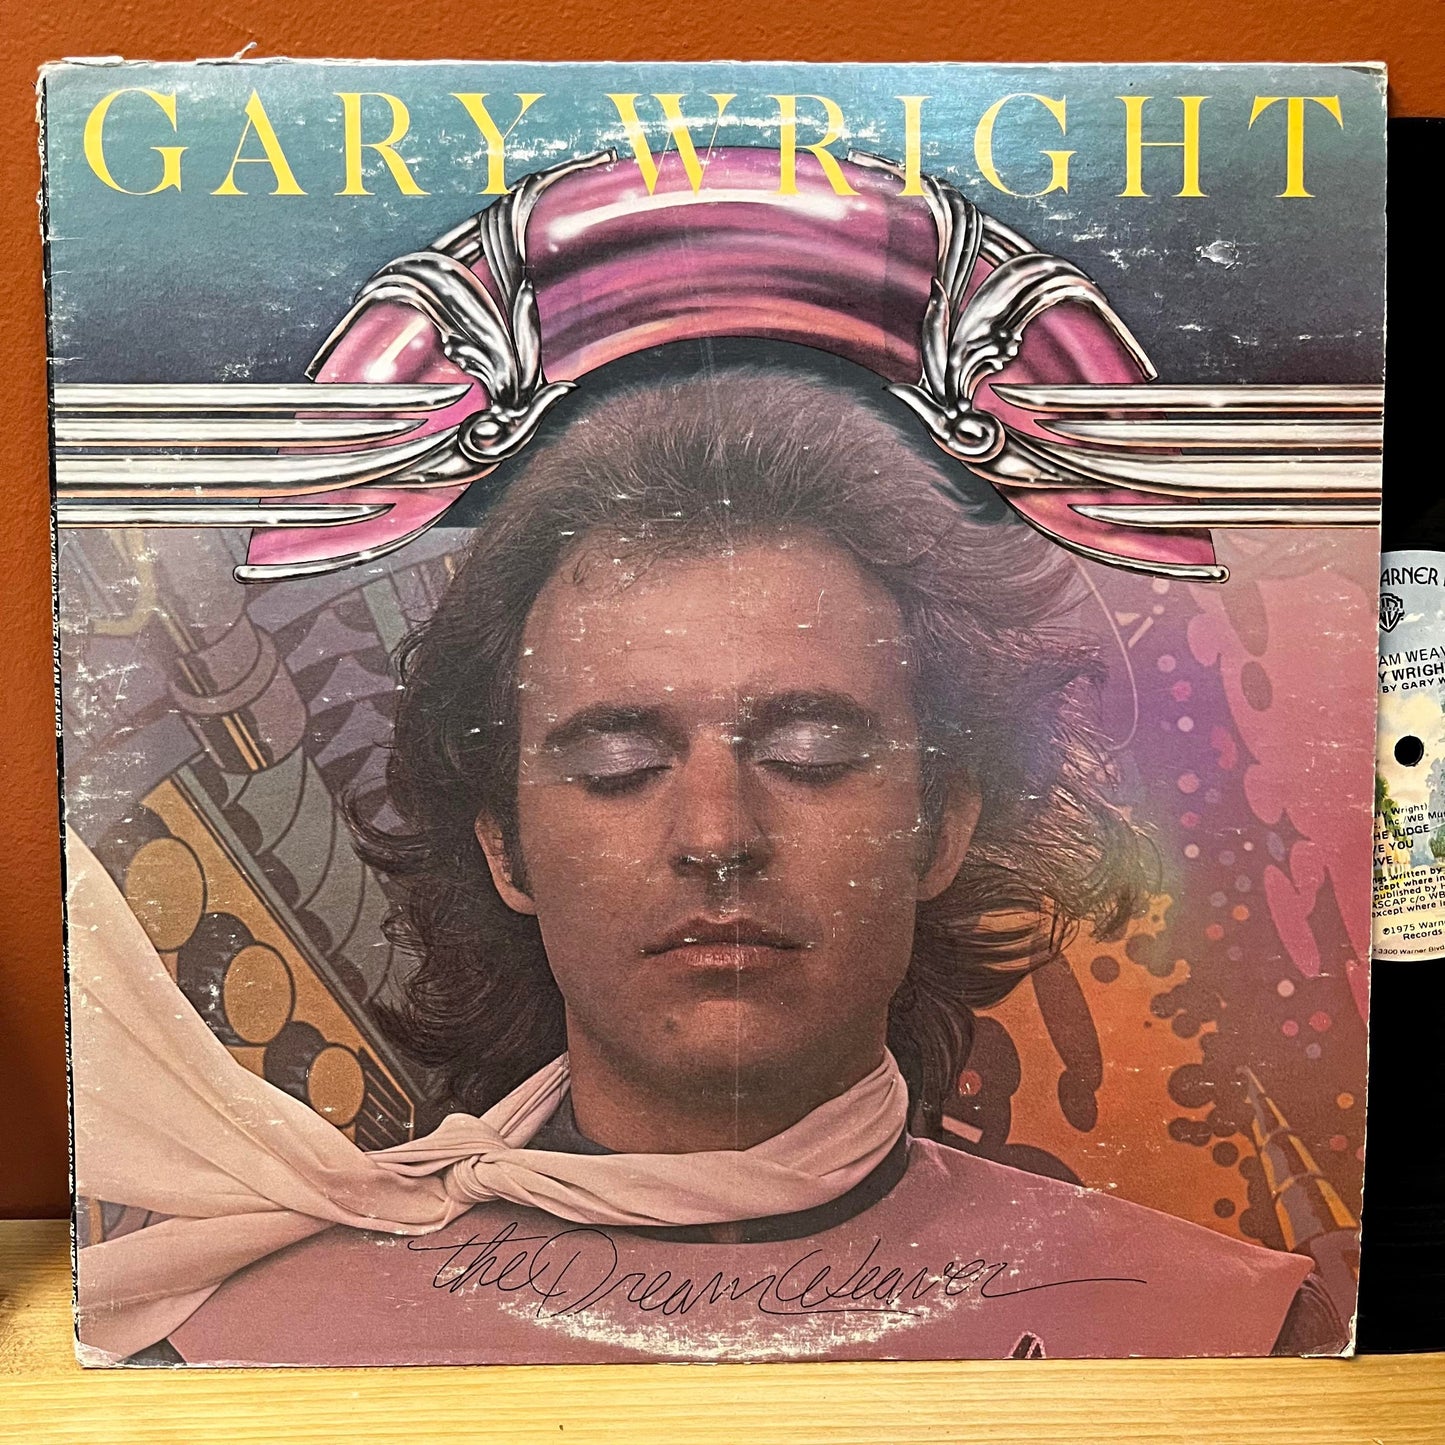 The Dream Weaver - Gary Wright BS 2868 Used Vinyl VG